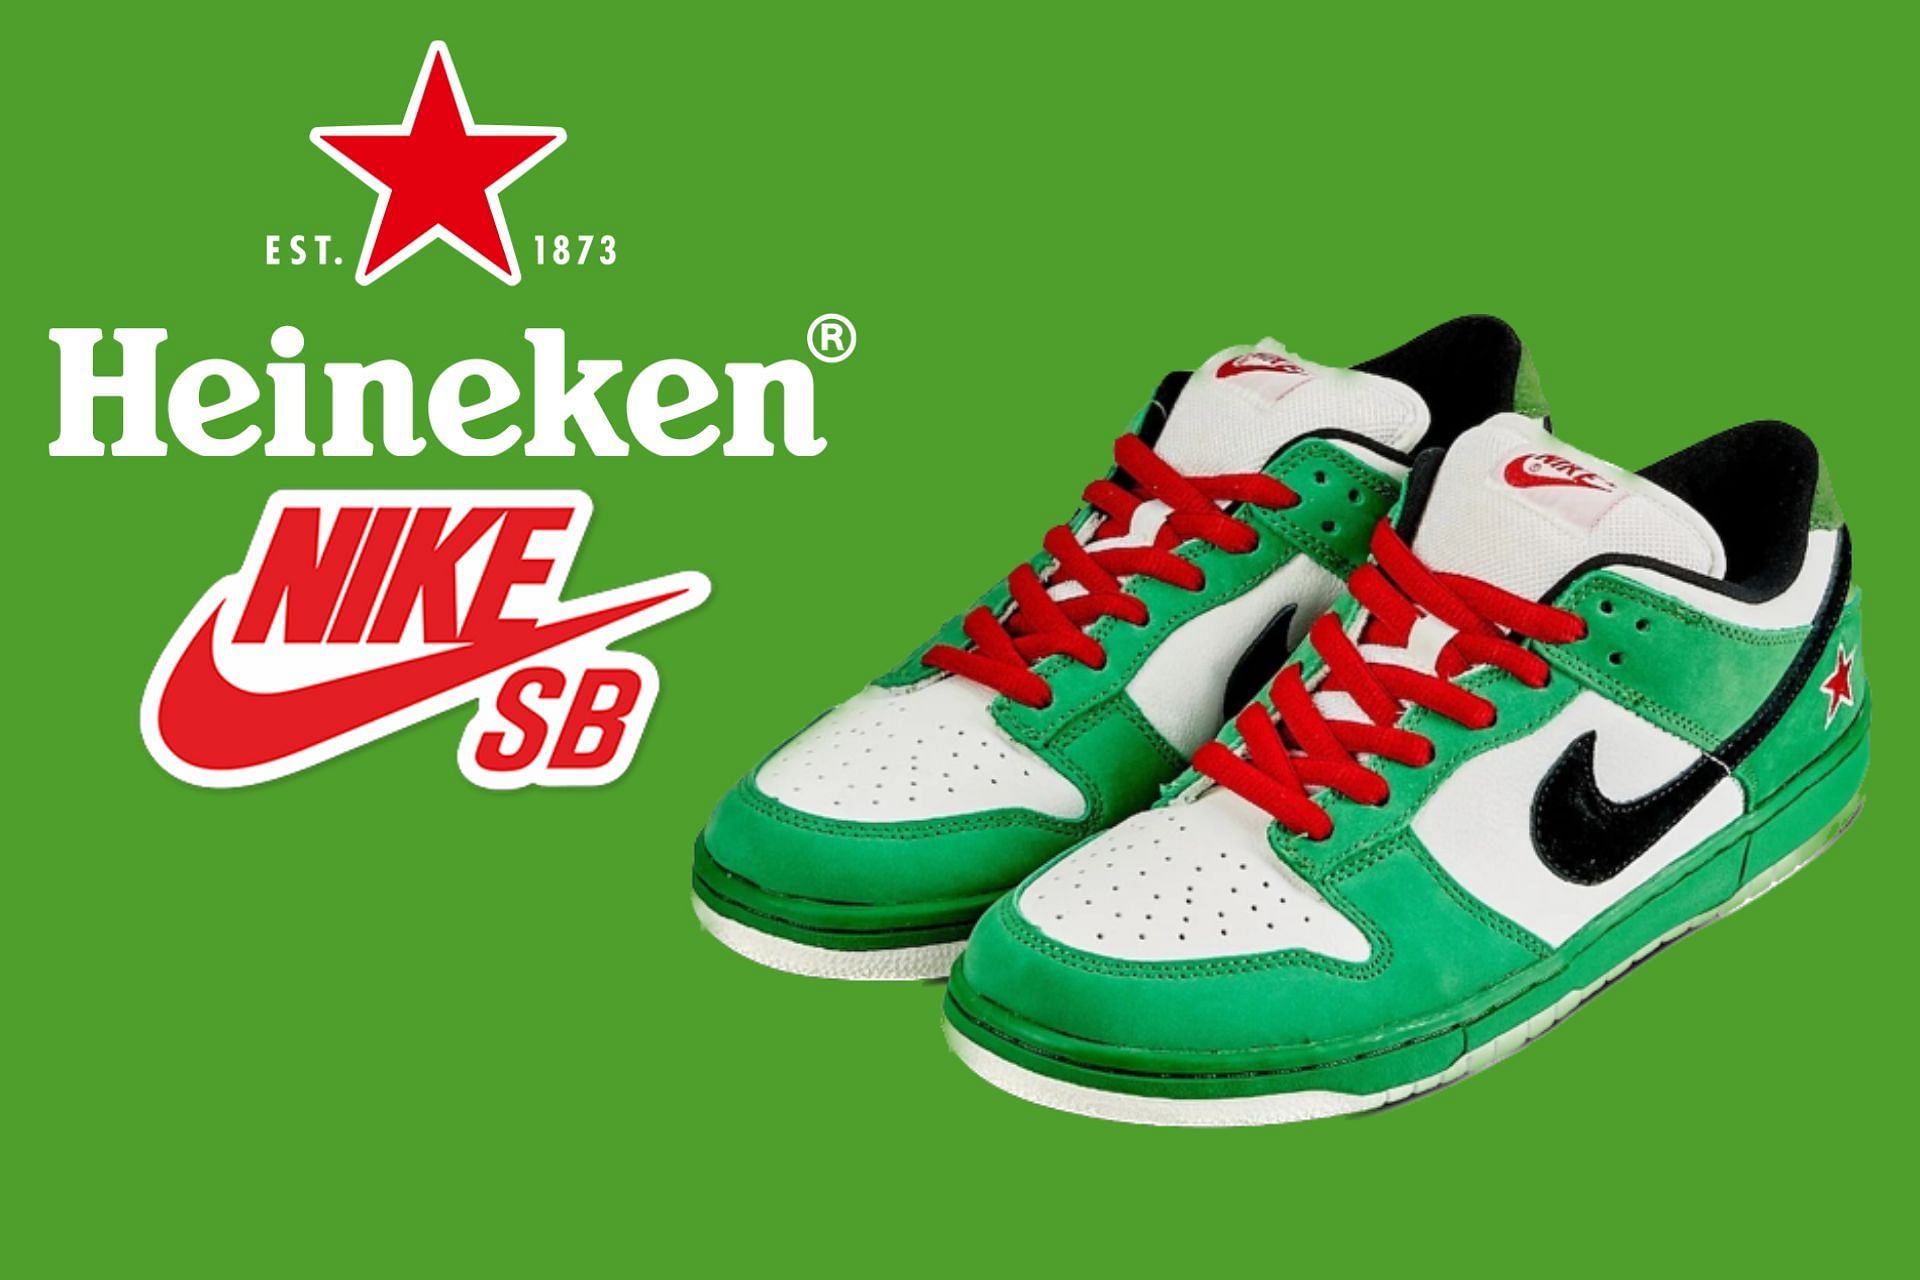 Nike SB Dunk Low Heineken shoes (Image via Sportskeeda)